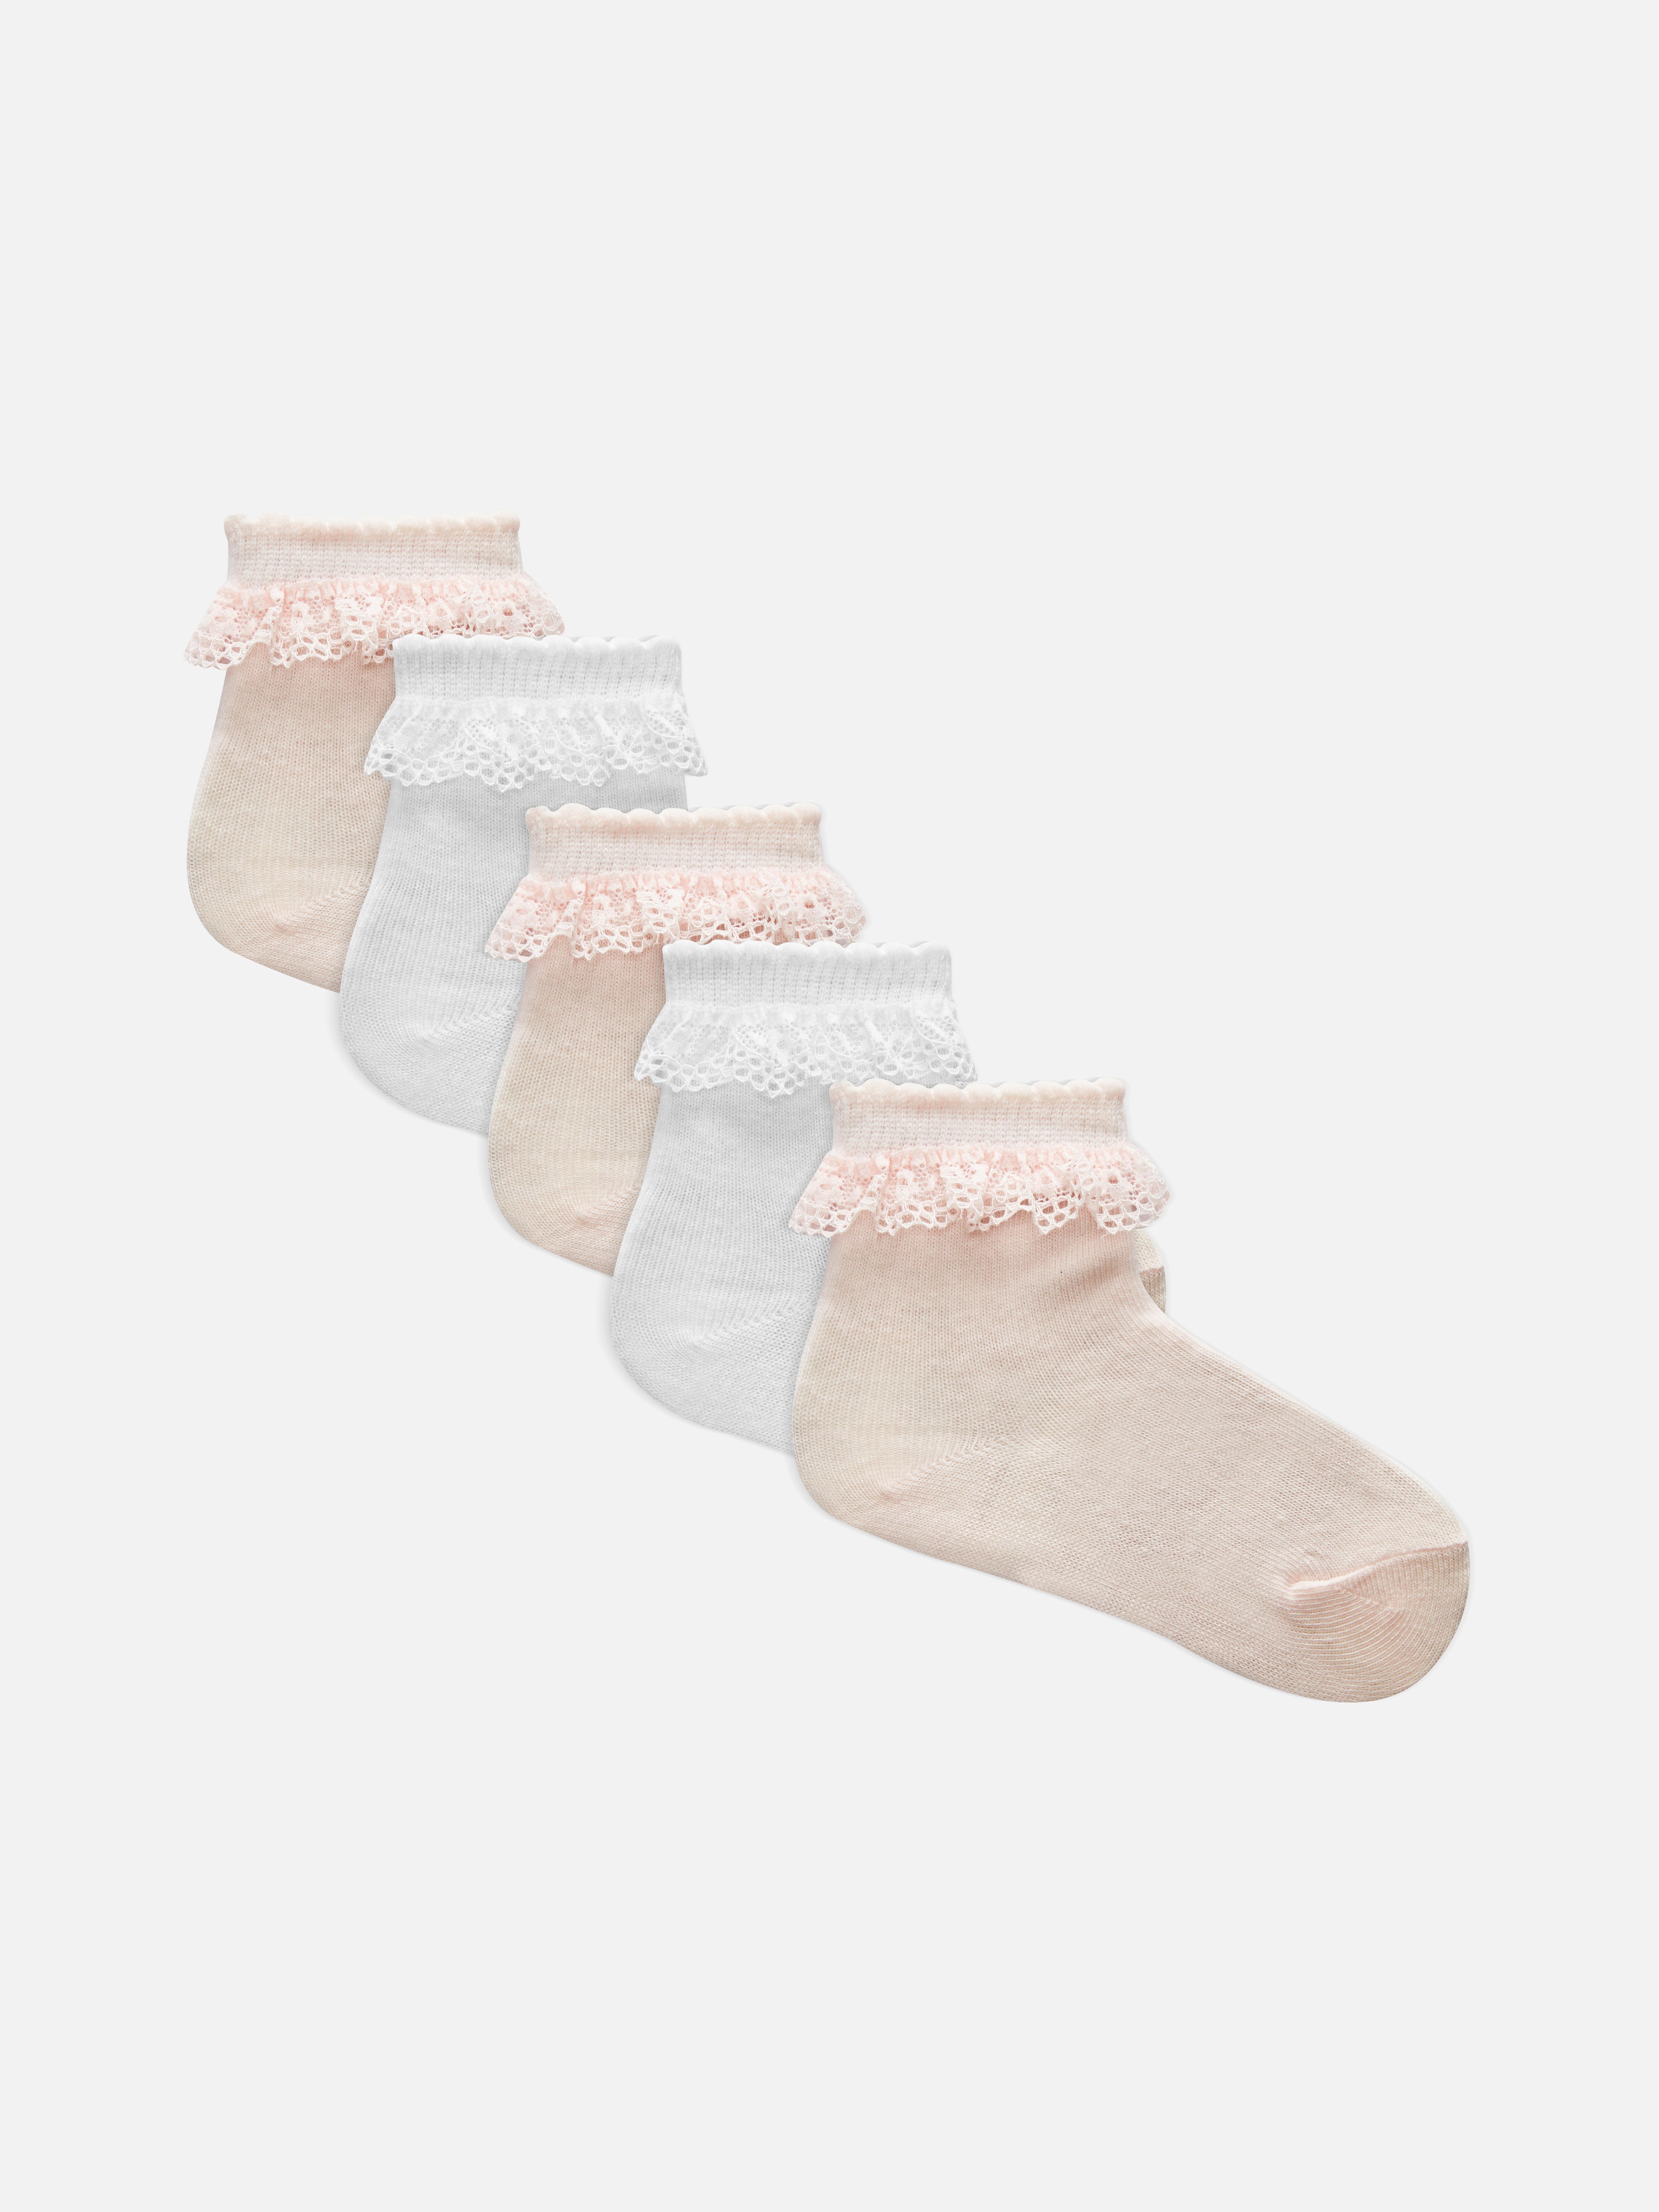 Lace Top Cotton Sock Set